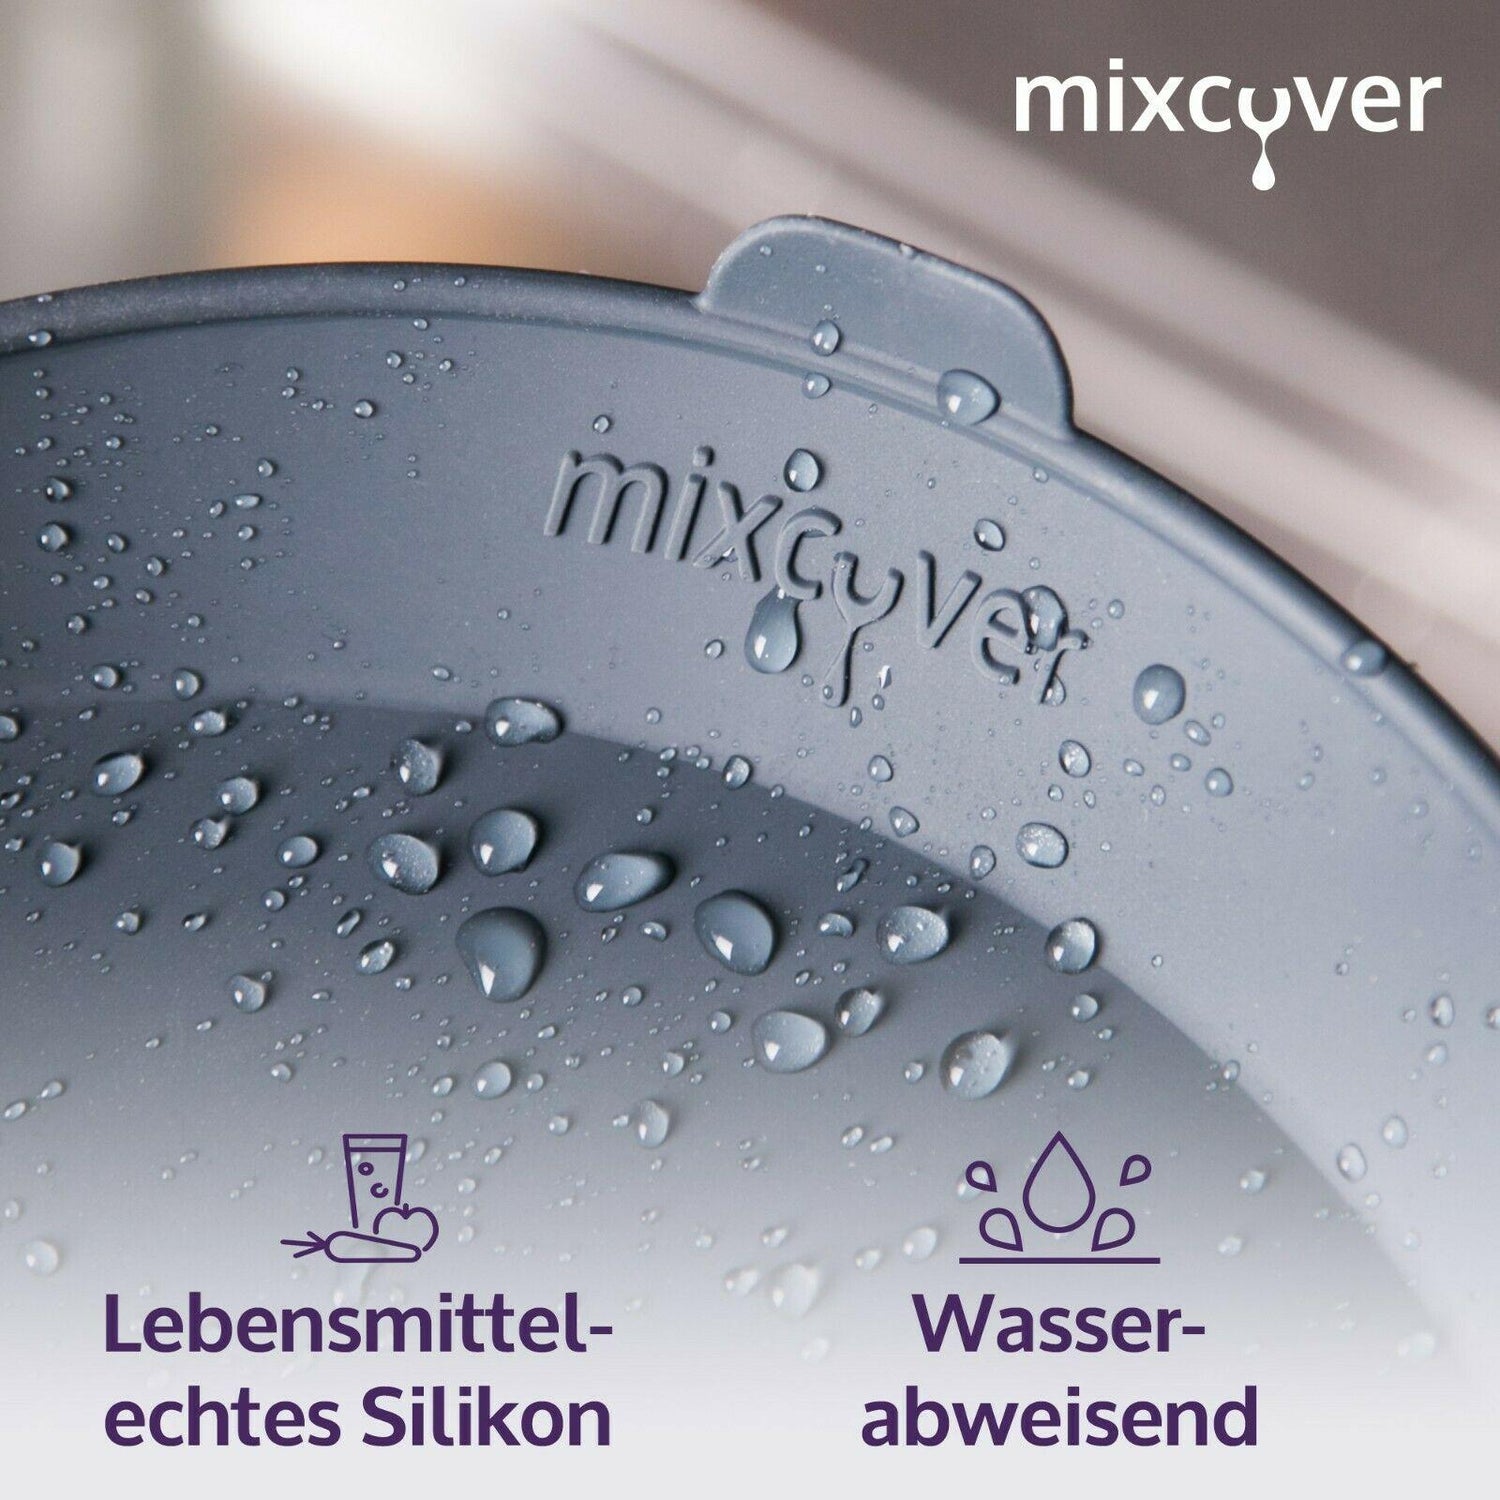 mixcover Dampfgarform Silikonform Auflaufform kompatibel mit Thermomix Zubehör für Varoma Einlegeboden - Zubehör für TM5 TM6 TM31 TM Friend, ganz - Mixcover - Mixcover